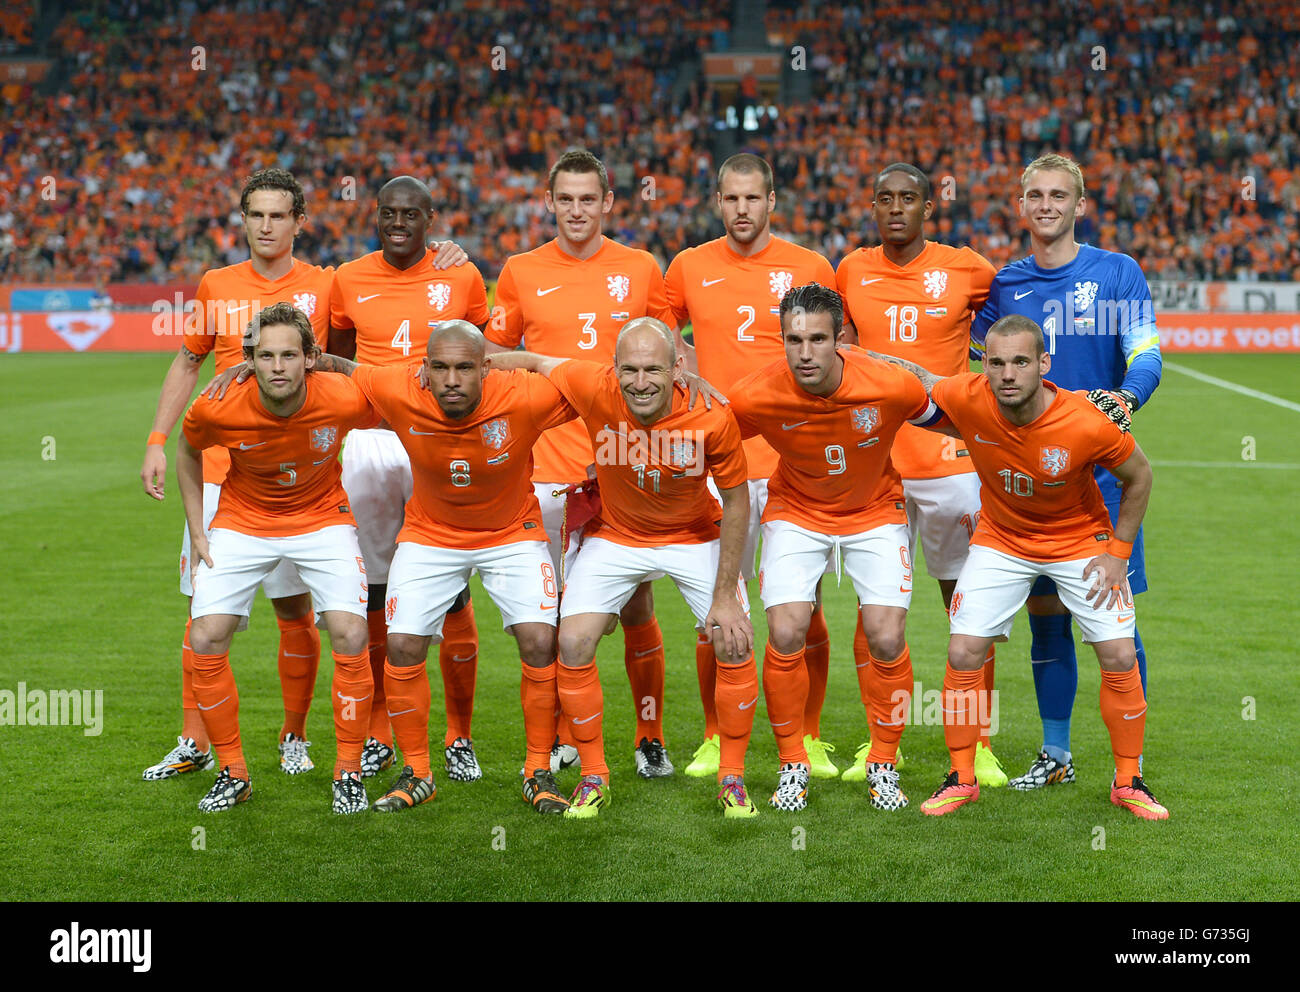 Calcio - amichevole internazionale - Paesi Bassi v Galles - Amsterdam Arena Foto Stock